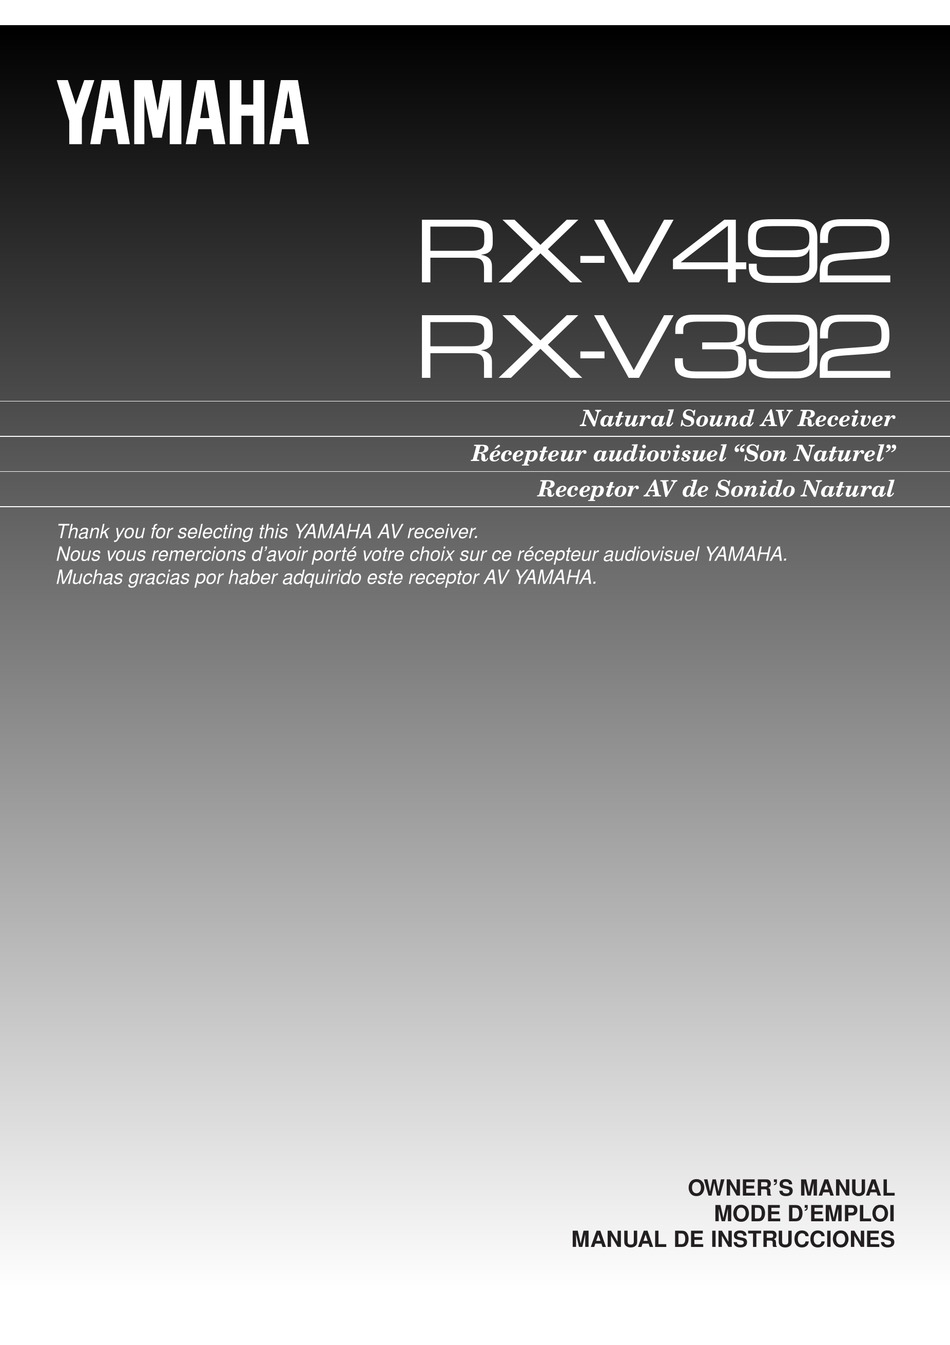 YAMAHA RX-V392 OWNER'S MANUAL Pdf Download | ManualsLib